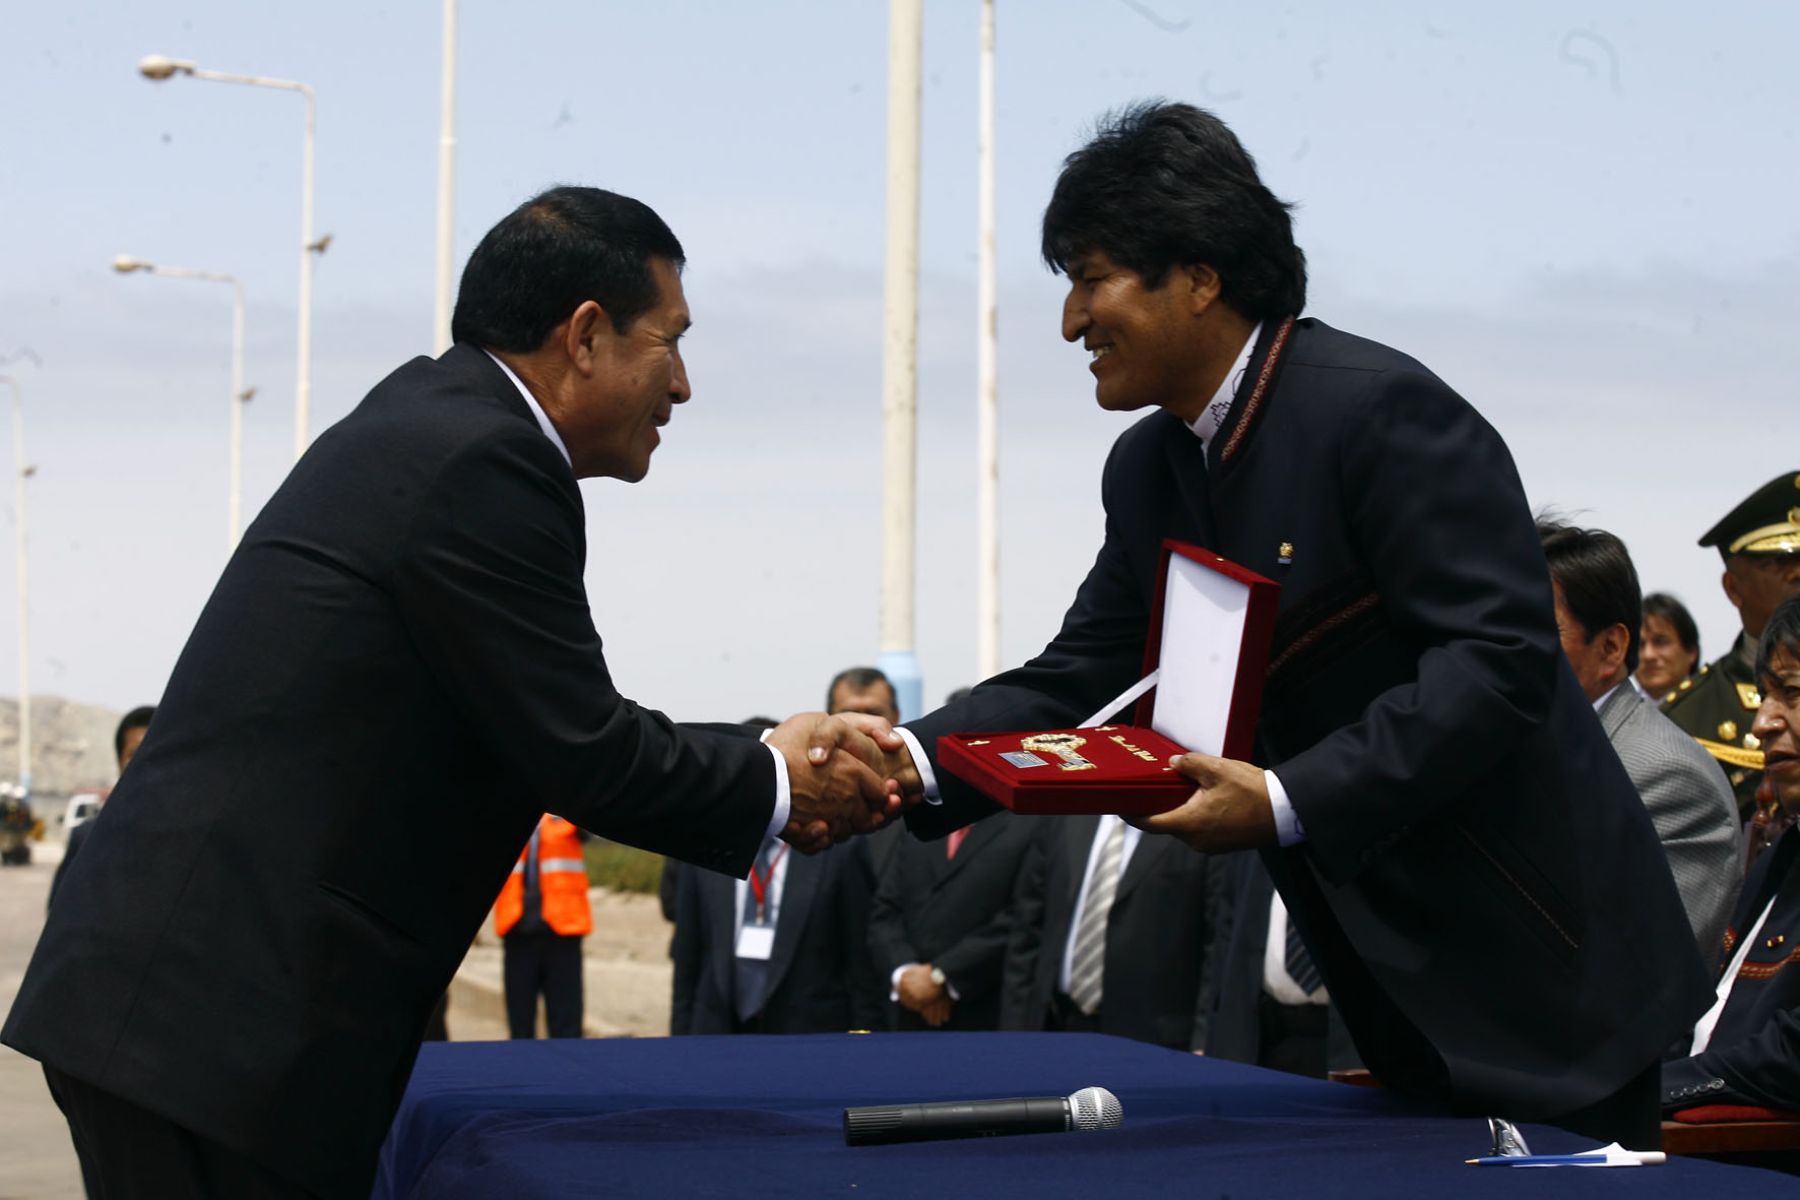 El jefe de Estado de Bolivia, Evo Morales, fue distinguido esta mañana en la ciudad de Ilo, en el marco de su visita oficial. Foto: Sepres.